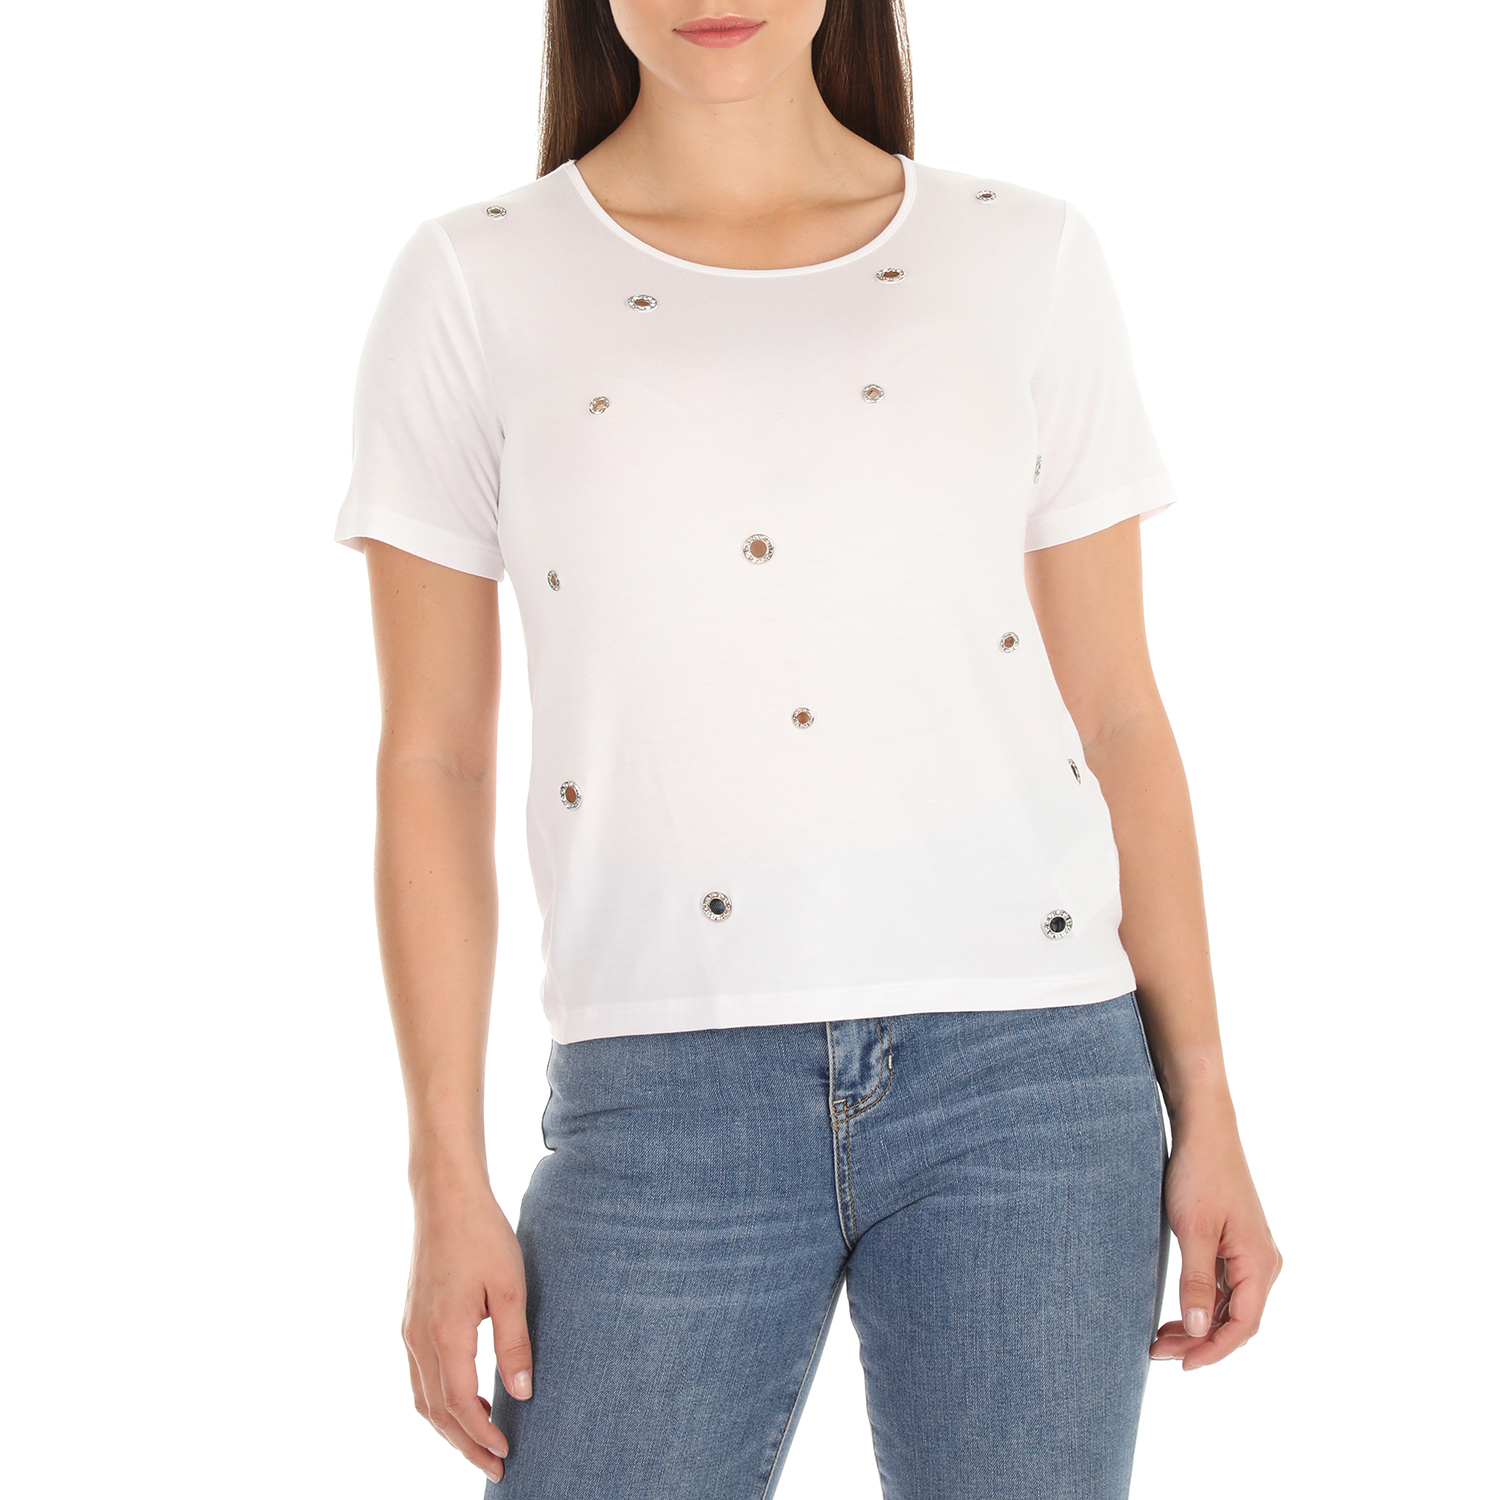 Γυναικεία/Ρούχα/Μπλούζες/Κοντομάνικες GUESS - Γυναικείο t-shirt με στάμπα GUESS EYELETS λευκό